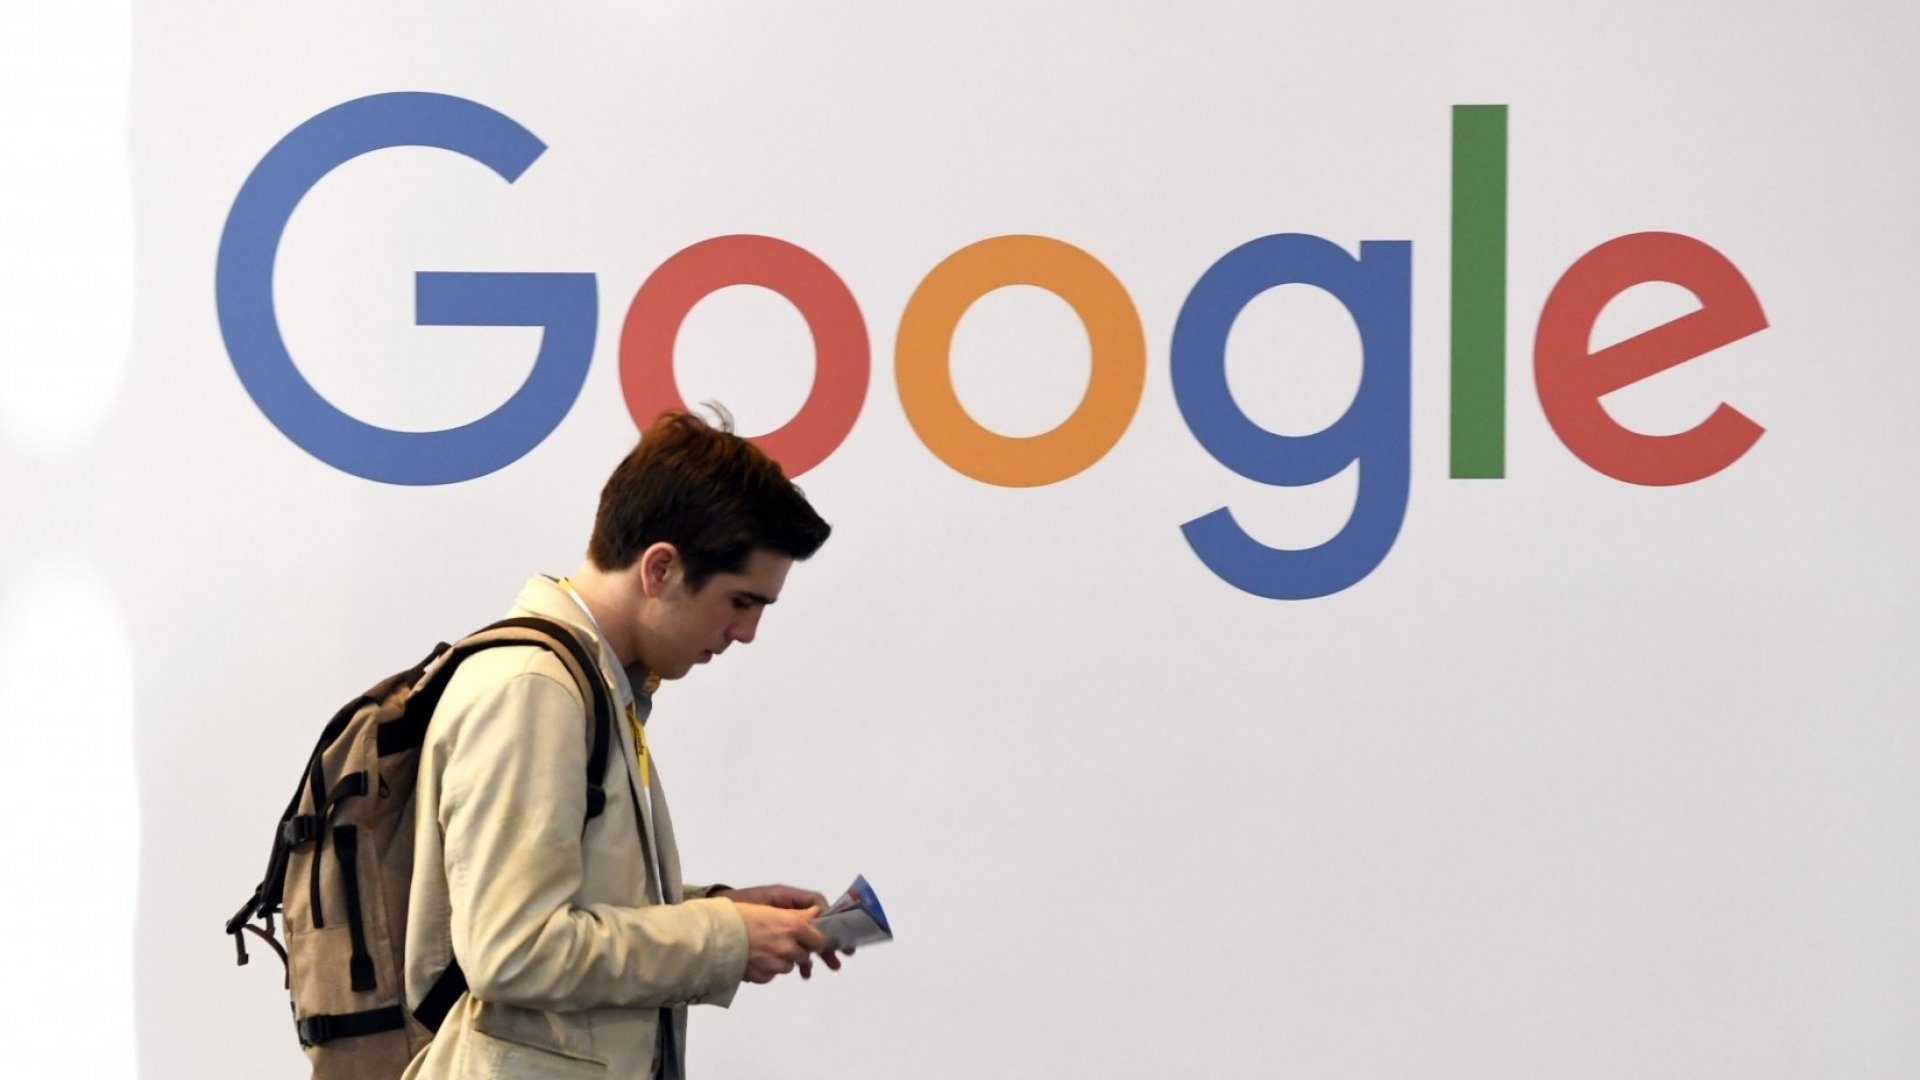 Google namenil 25 milijonov dolarjev za boj proti lažnim novicam